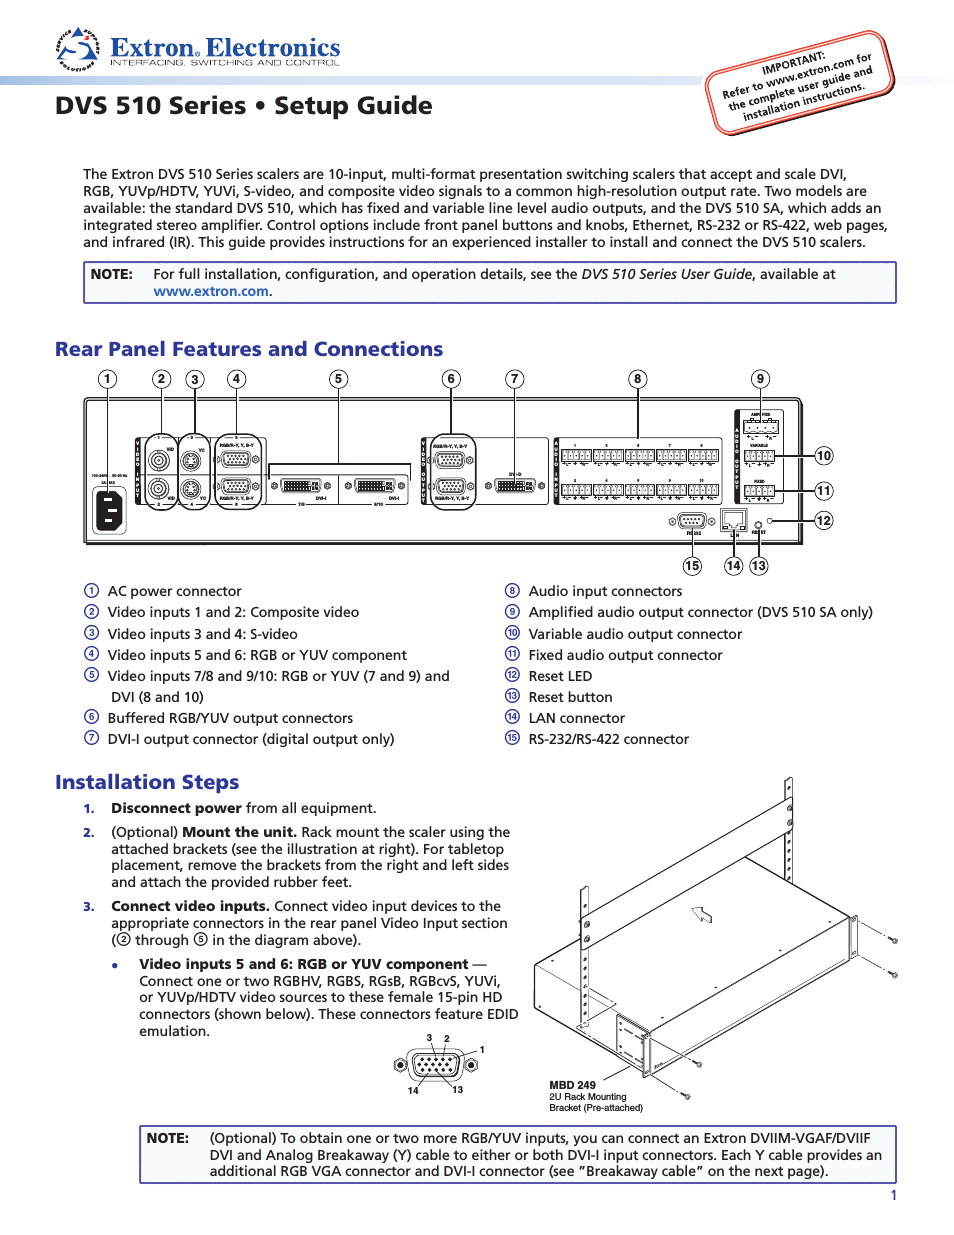 DVS 510 Series Setup Guide